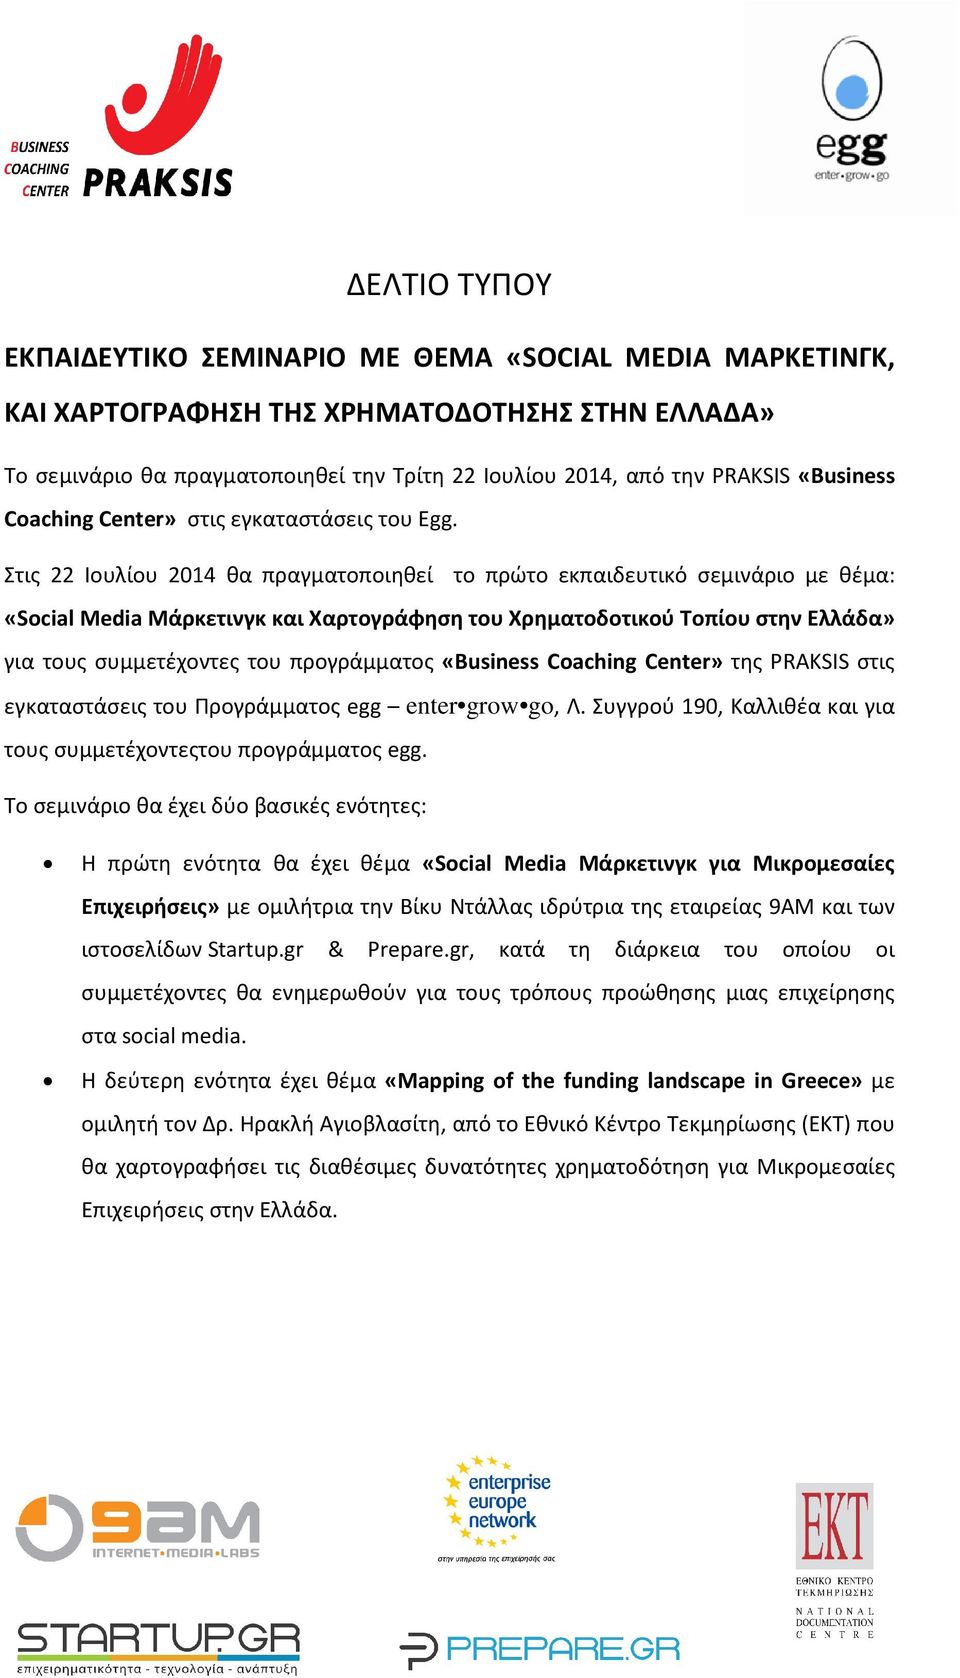 Στις 22 Ιουλίου 2014 θα πραγματοποιηθεί το πρώτο εκπαιδευτικό σεμινάριο με θέμα: «Social Media Μάρκετινγκ και Χαρτογράφηση του Χρηματοδοτικού Τοπίου στην Ελλάδα» για τους συμμετέχοντες του